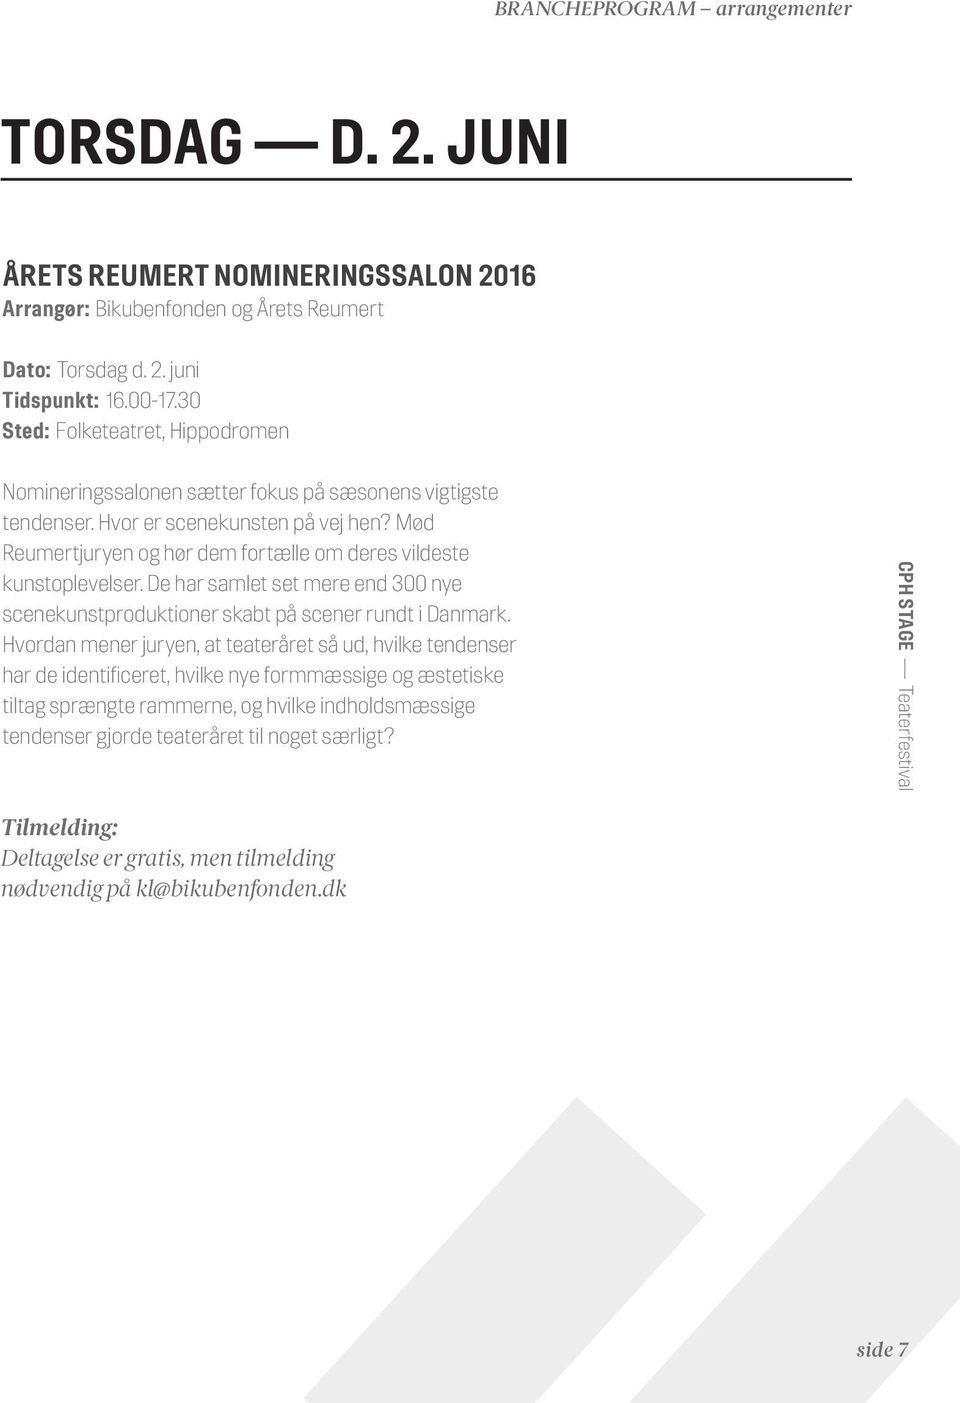 Mød Reumertjuryen og hør dem fortælle om deres vildeste kunstoplevelser. De har samlet set mere end 300 nye scenekunstproduktioner skabt på scener rundt i Danmark.